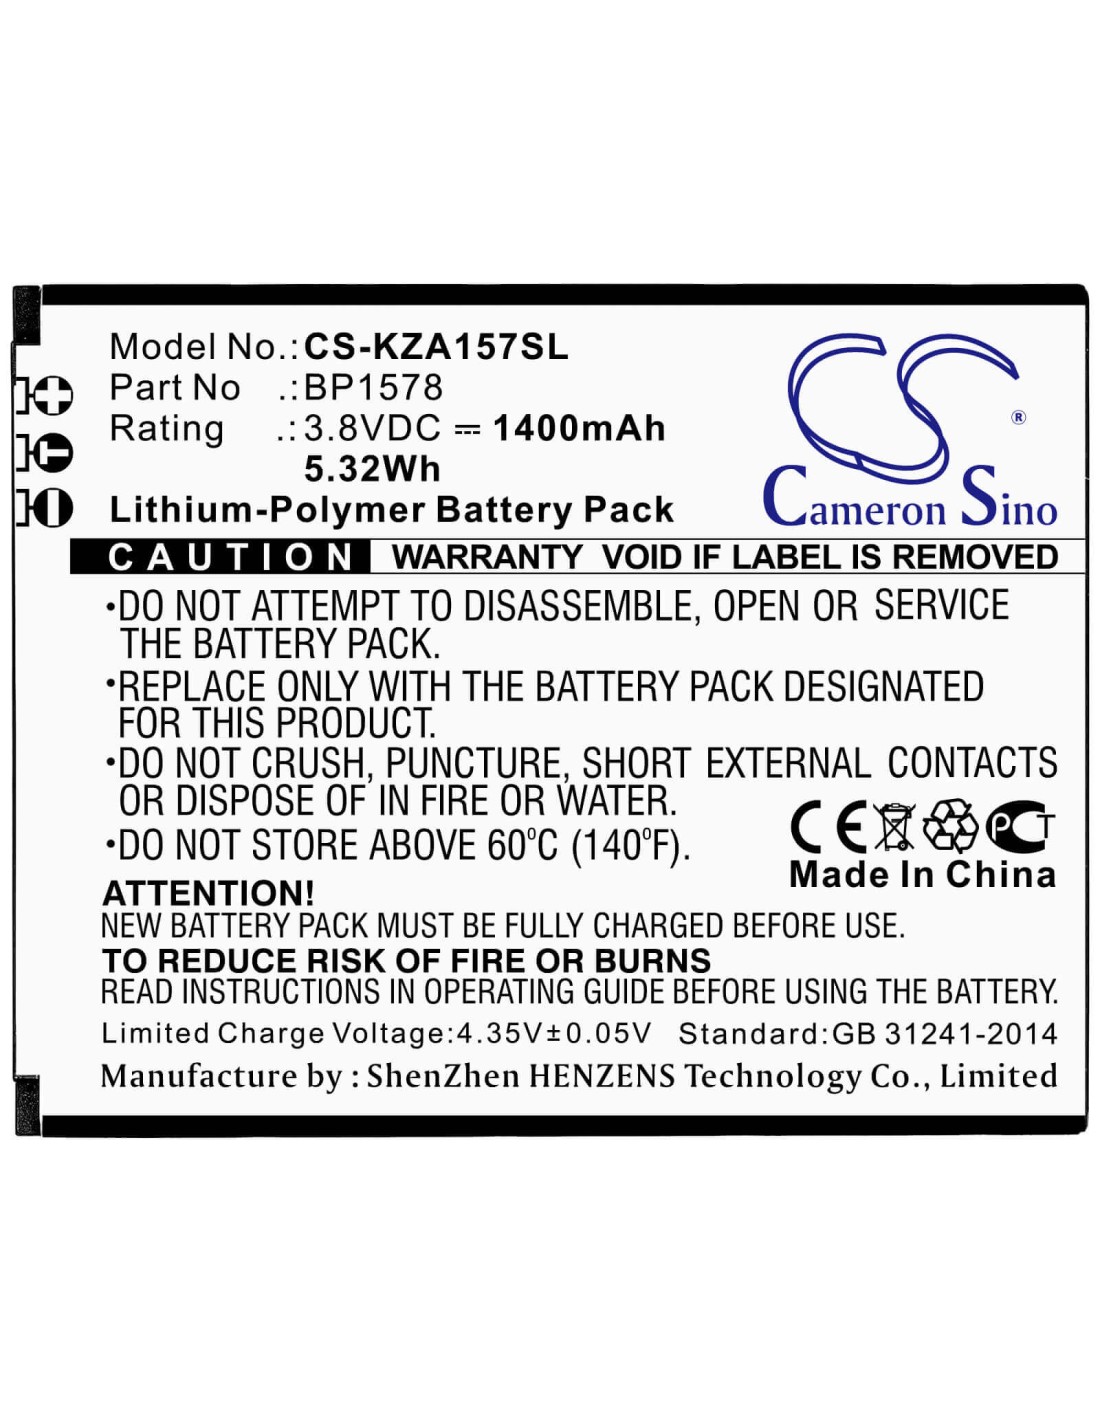 Battery for Kazuna, Etalk 4g, Kaz-f019, Kaz-f019pp 3.8V, 1400mAh - 5.32Wh